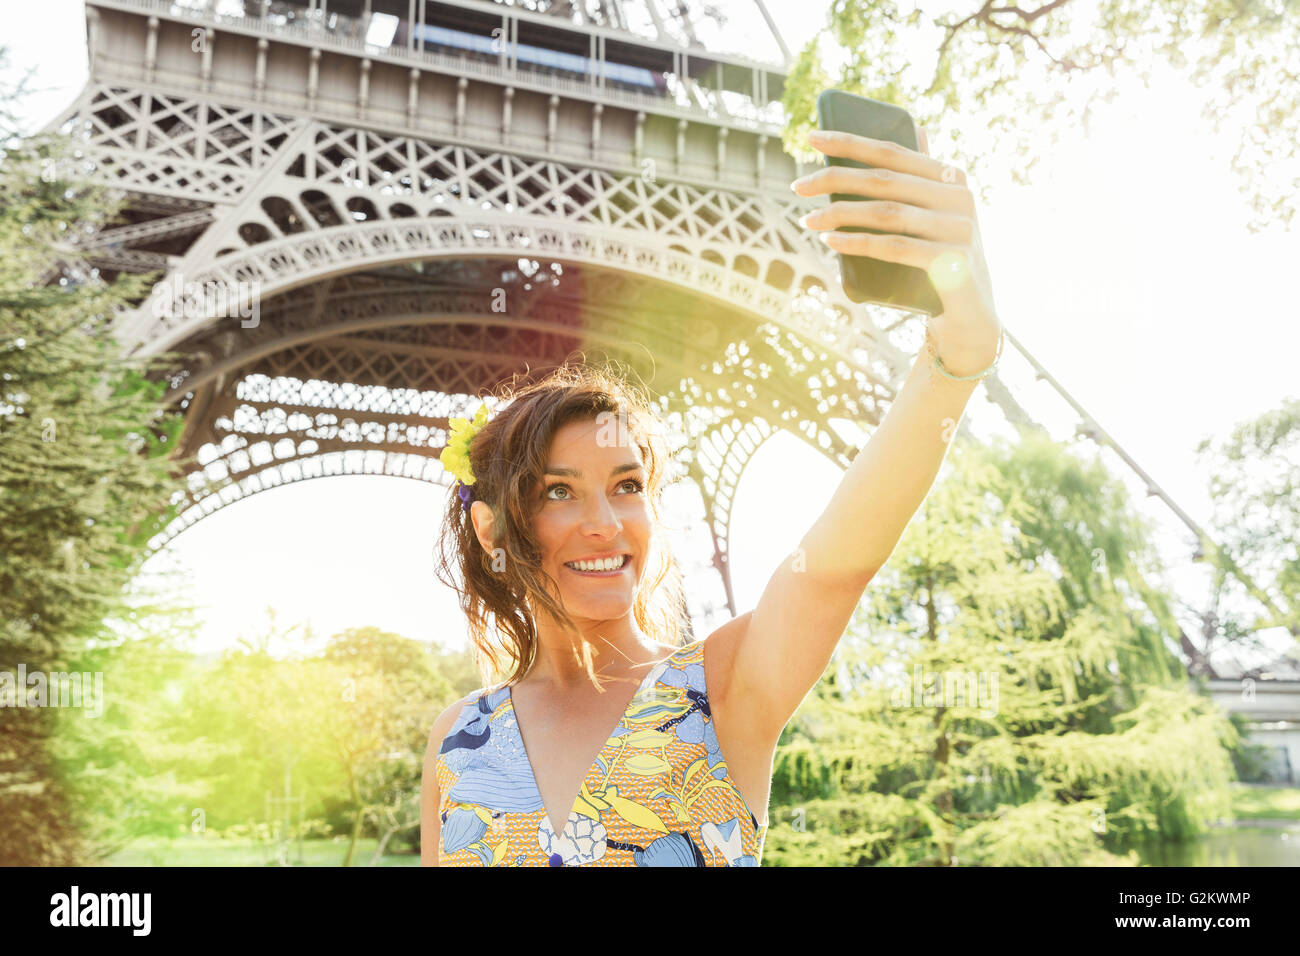 Paris, Frau tut ein Selbstporträt mit Eiffelturm auf Hintergrund Stockfoto